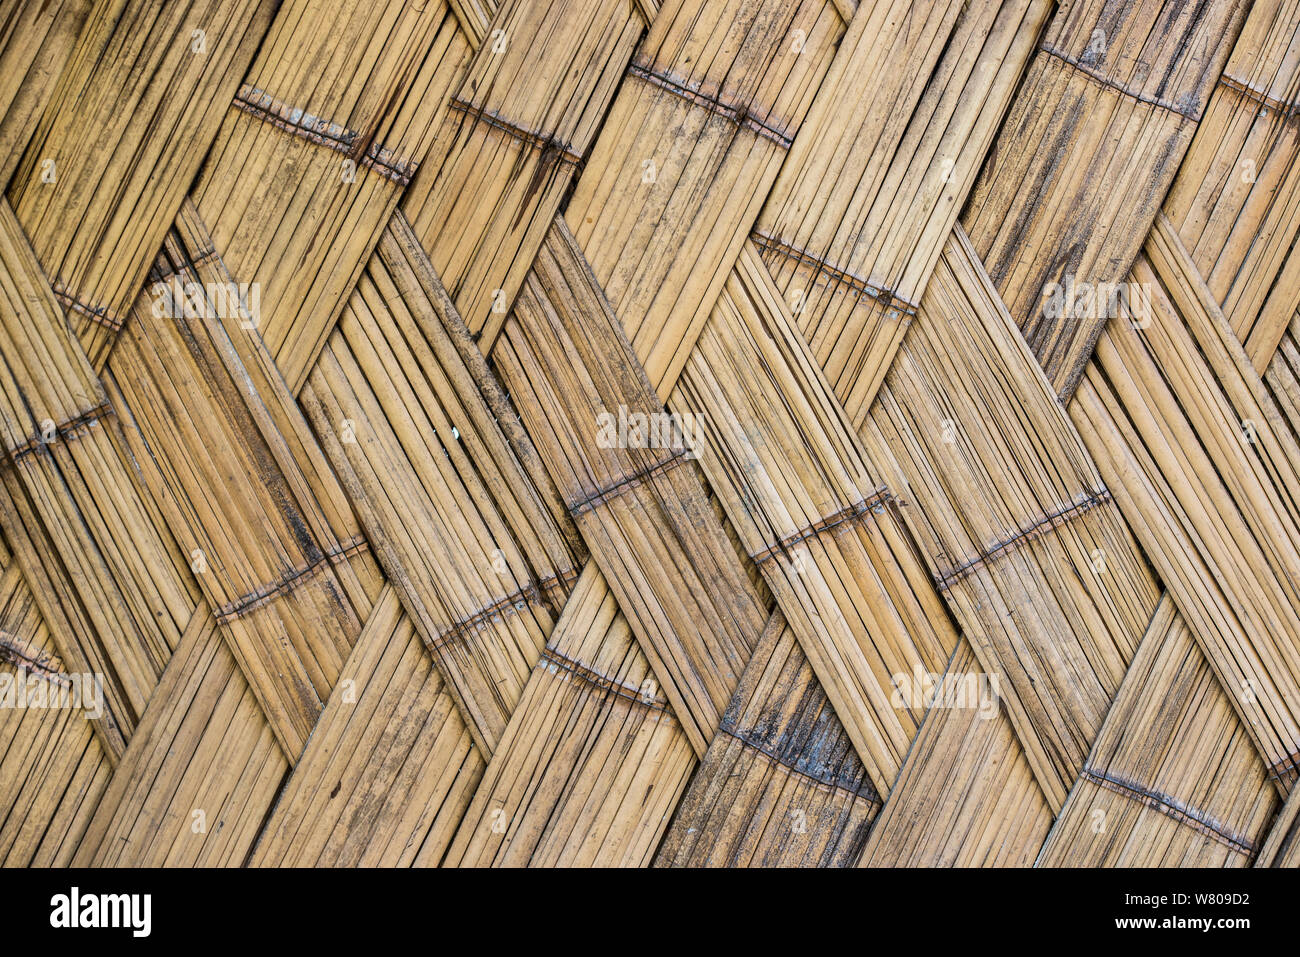 Bamboo wall detail, Nagaland, North East India, October 2014. Stock Photo